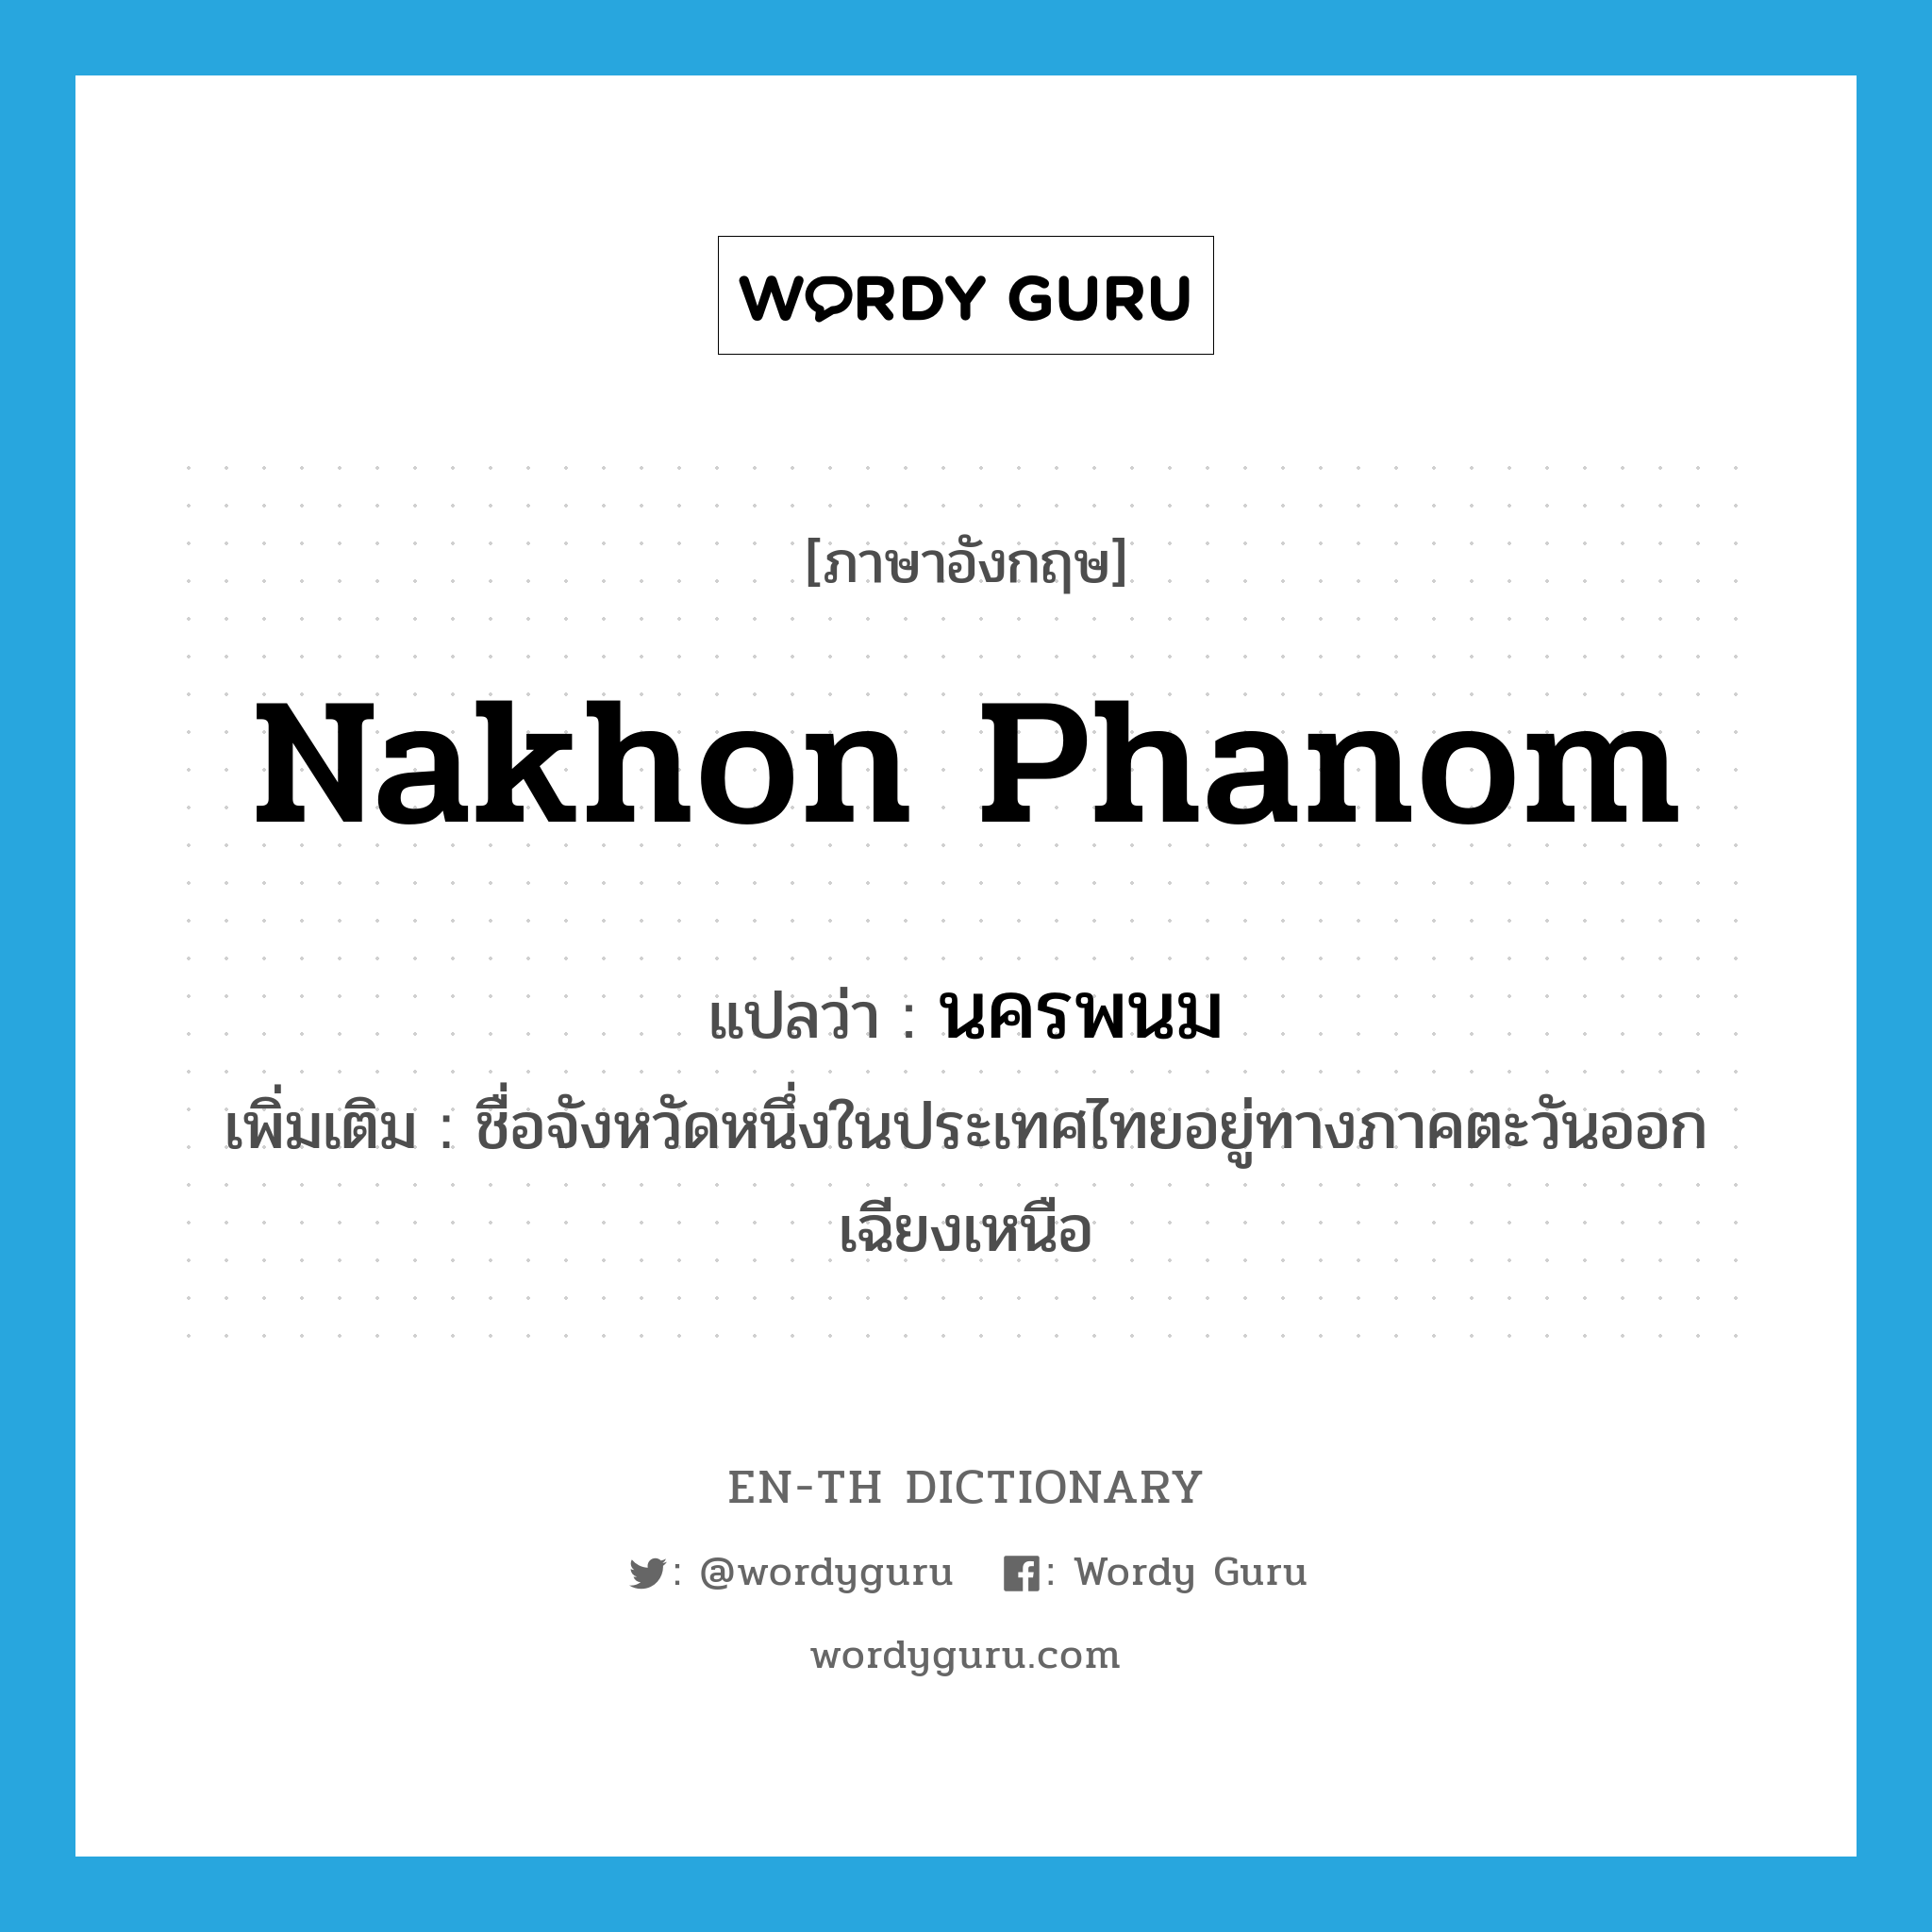 นครพนม ภาษาอังกฤษ?, คำศัพท์ภาษาอังกฤษ นครพนม แปลว่า Nakhon Phanom ประเภท N เพิ่มเติม ชื่อจังหวัดหนึ่งในประเทศไทยอยู่ทางภาคตะวันออกเฉียงเหนือ หมวด N